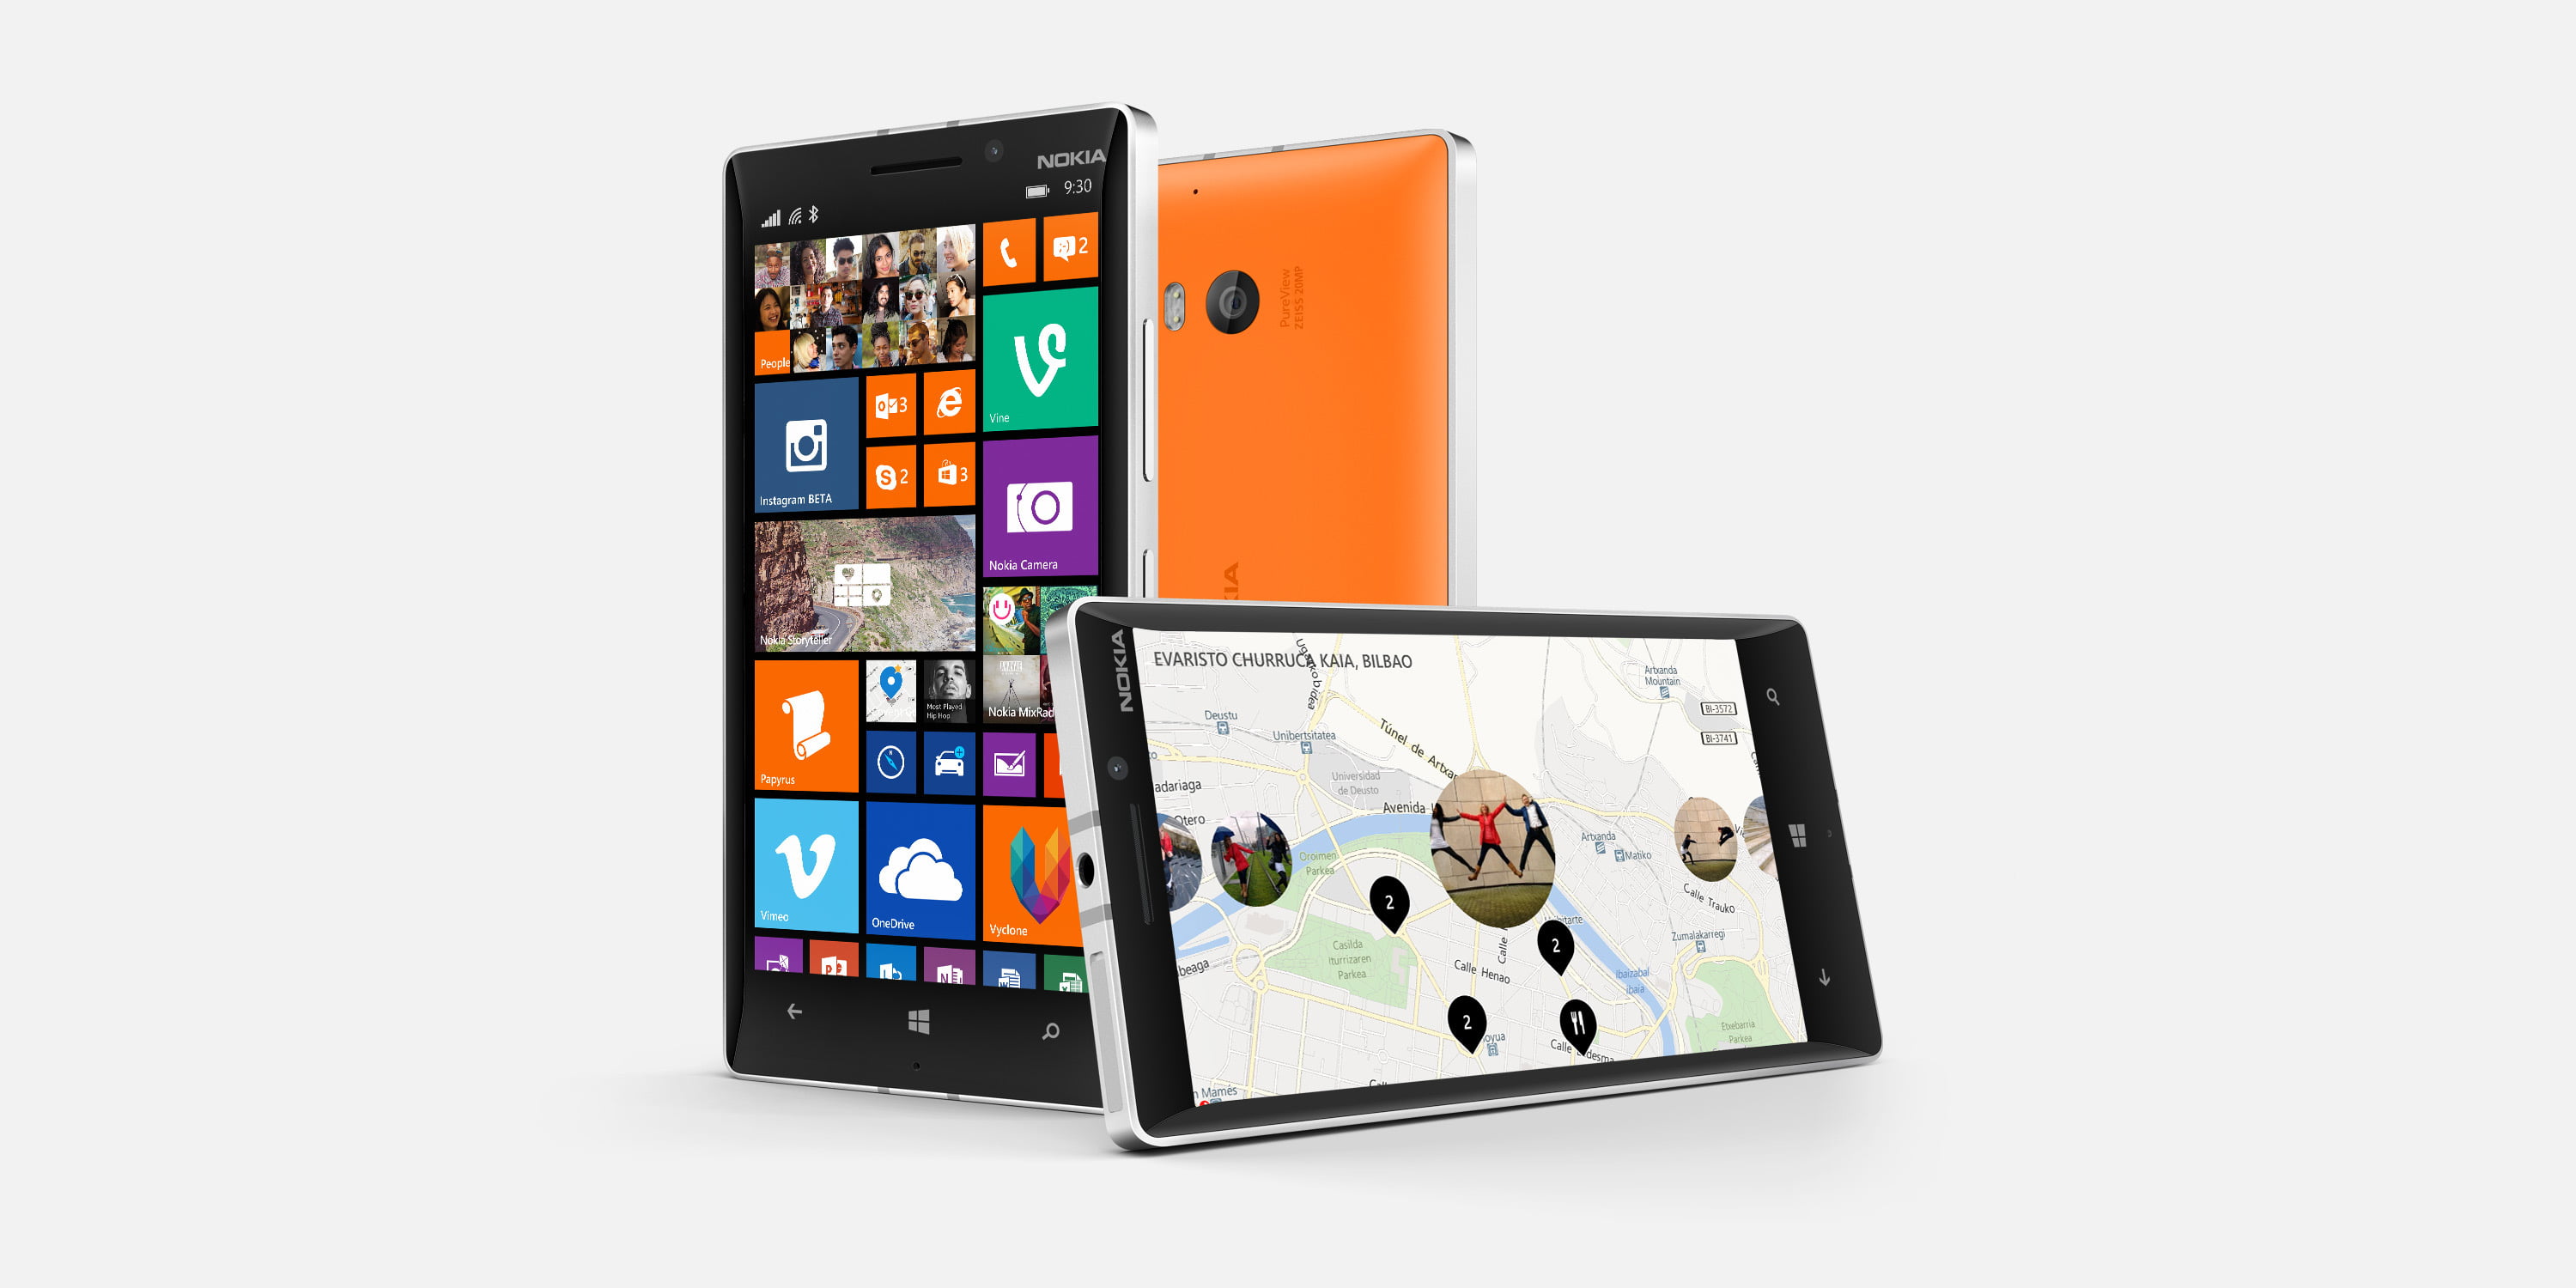 Metal, smartphone, Nokia, Lumia, Icon, 930, technology, wireless technology